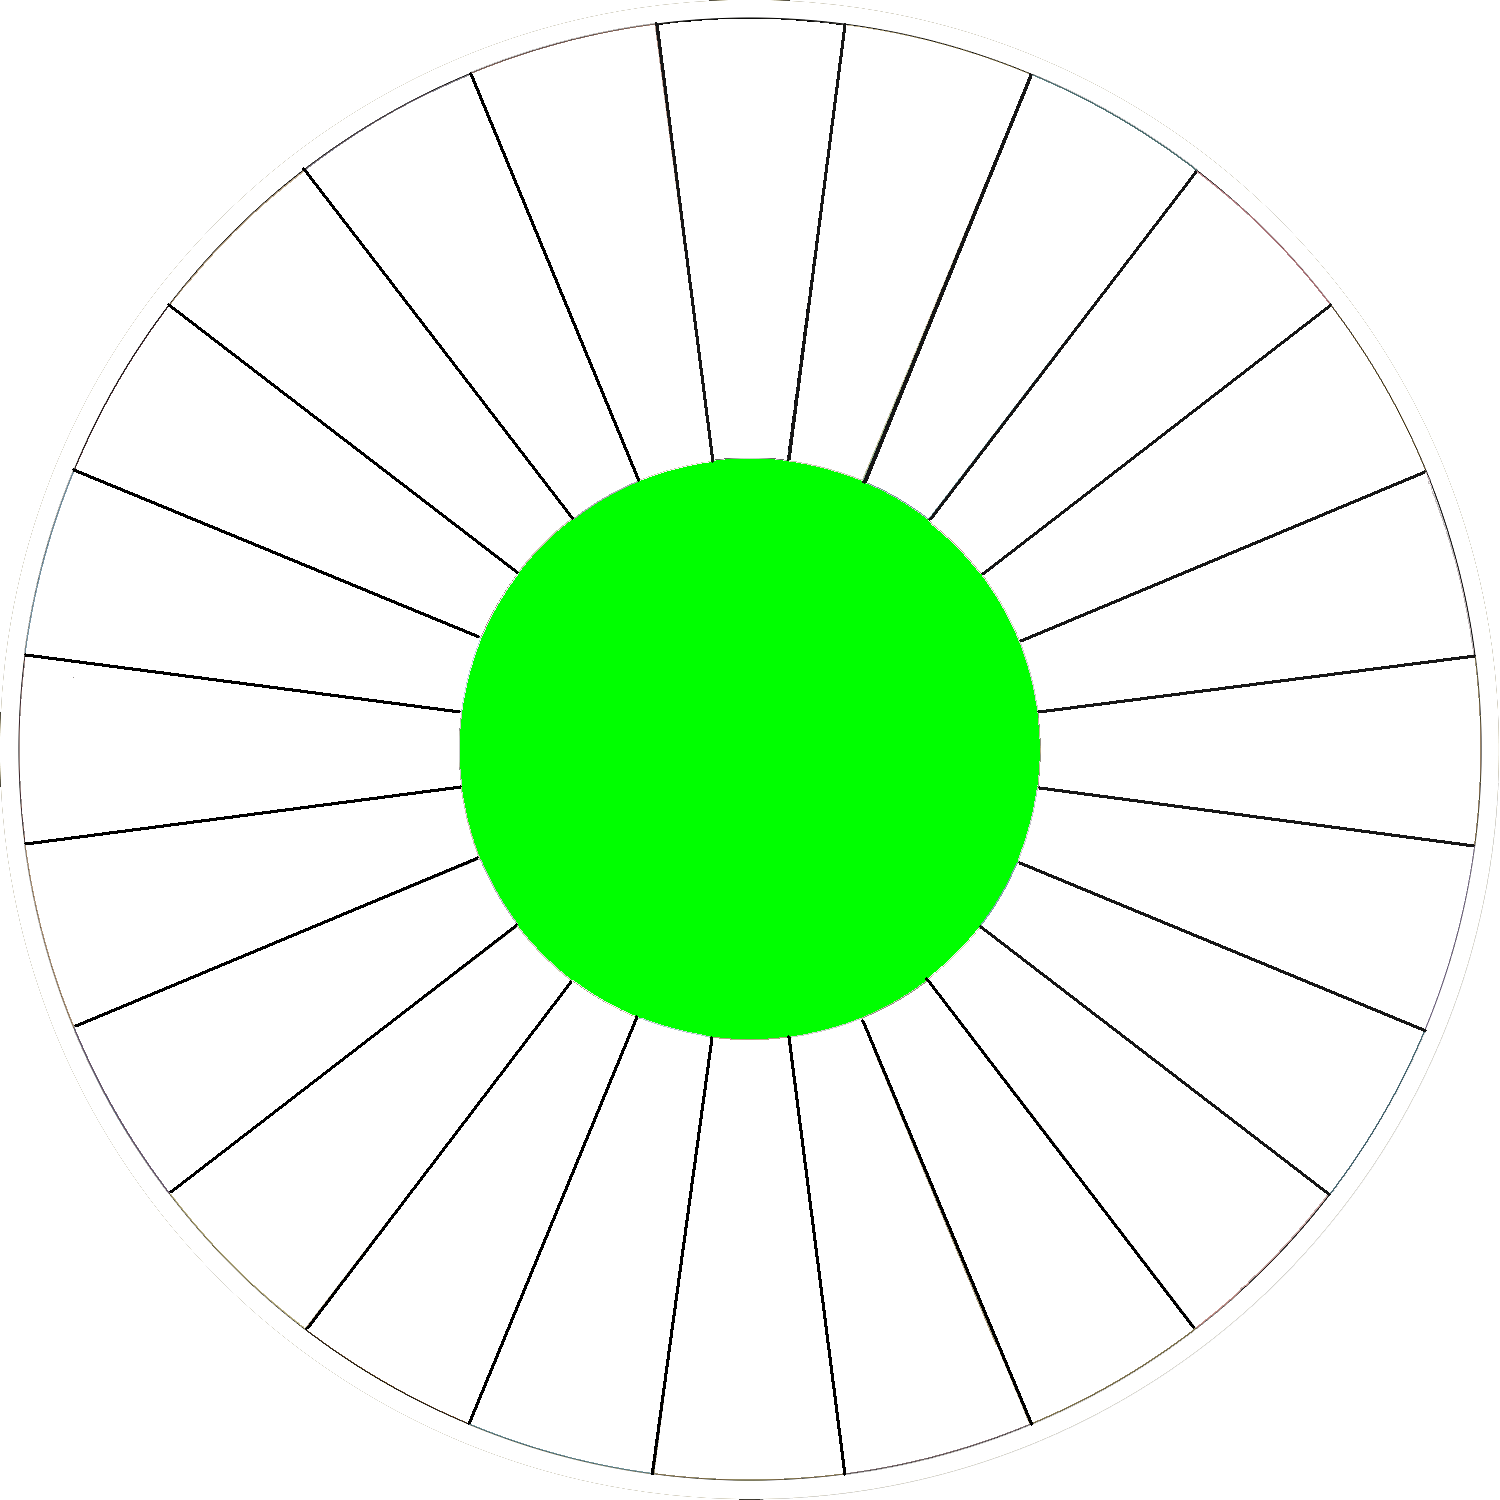 Blank wheel template 2 by Larry4009 on DeviantArt